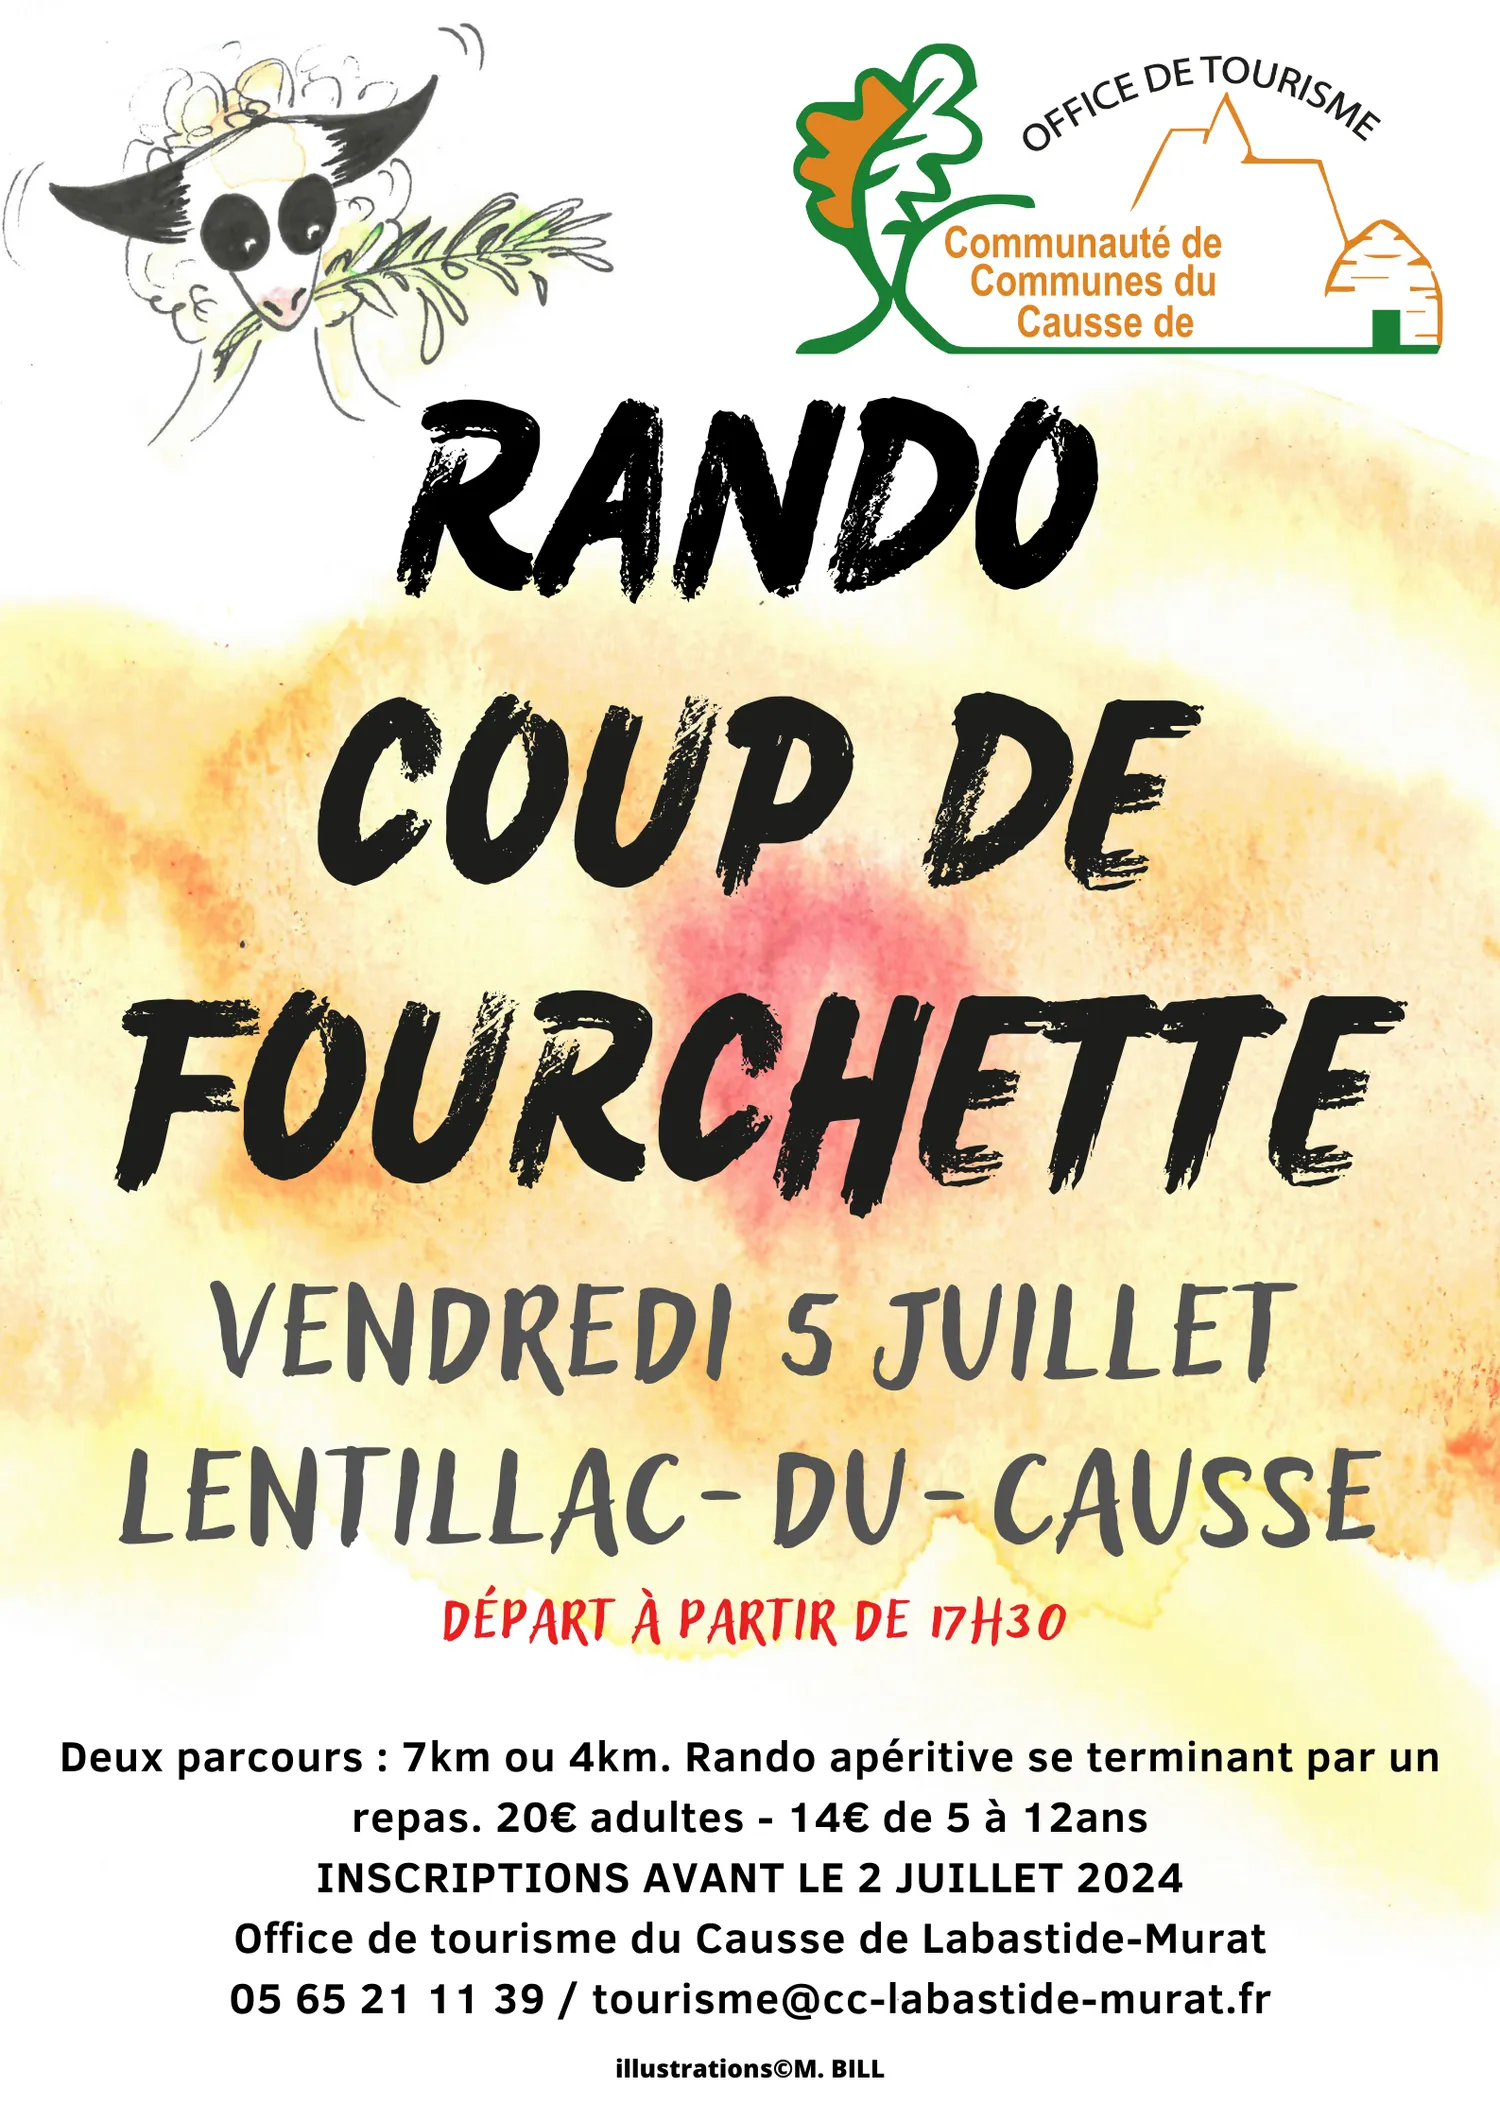 Image qui illustre: Rando Coup De Fourchette à Lentillac-du-Causse - 0